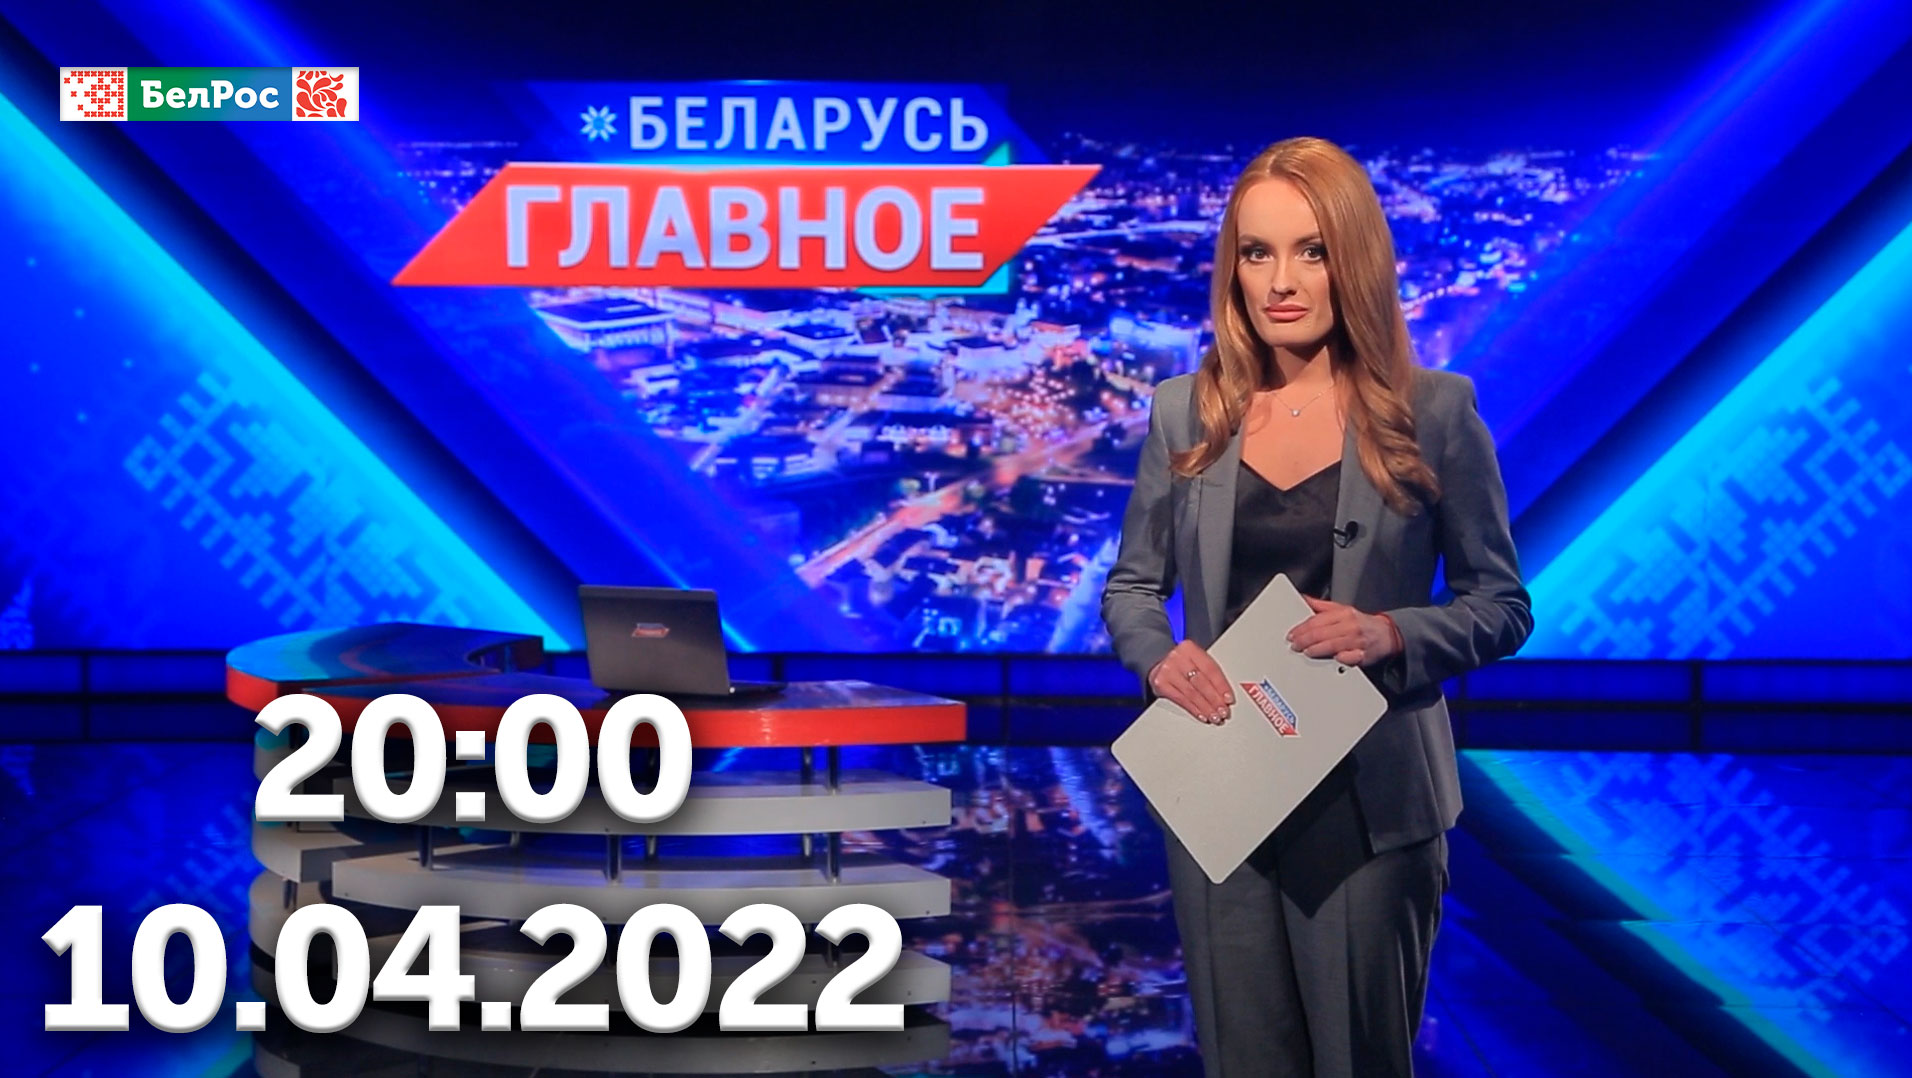 Беларусь Главное |10.04.2022